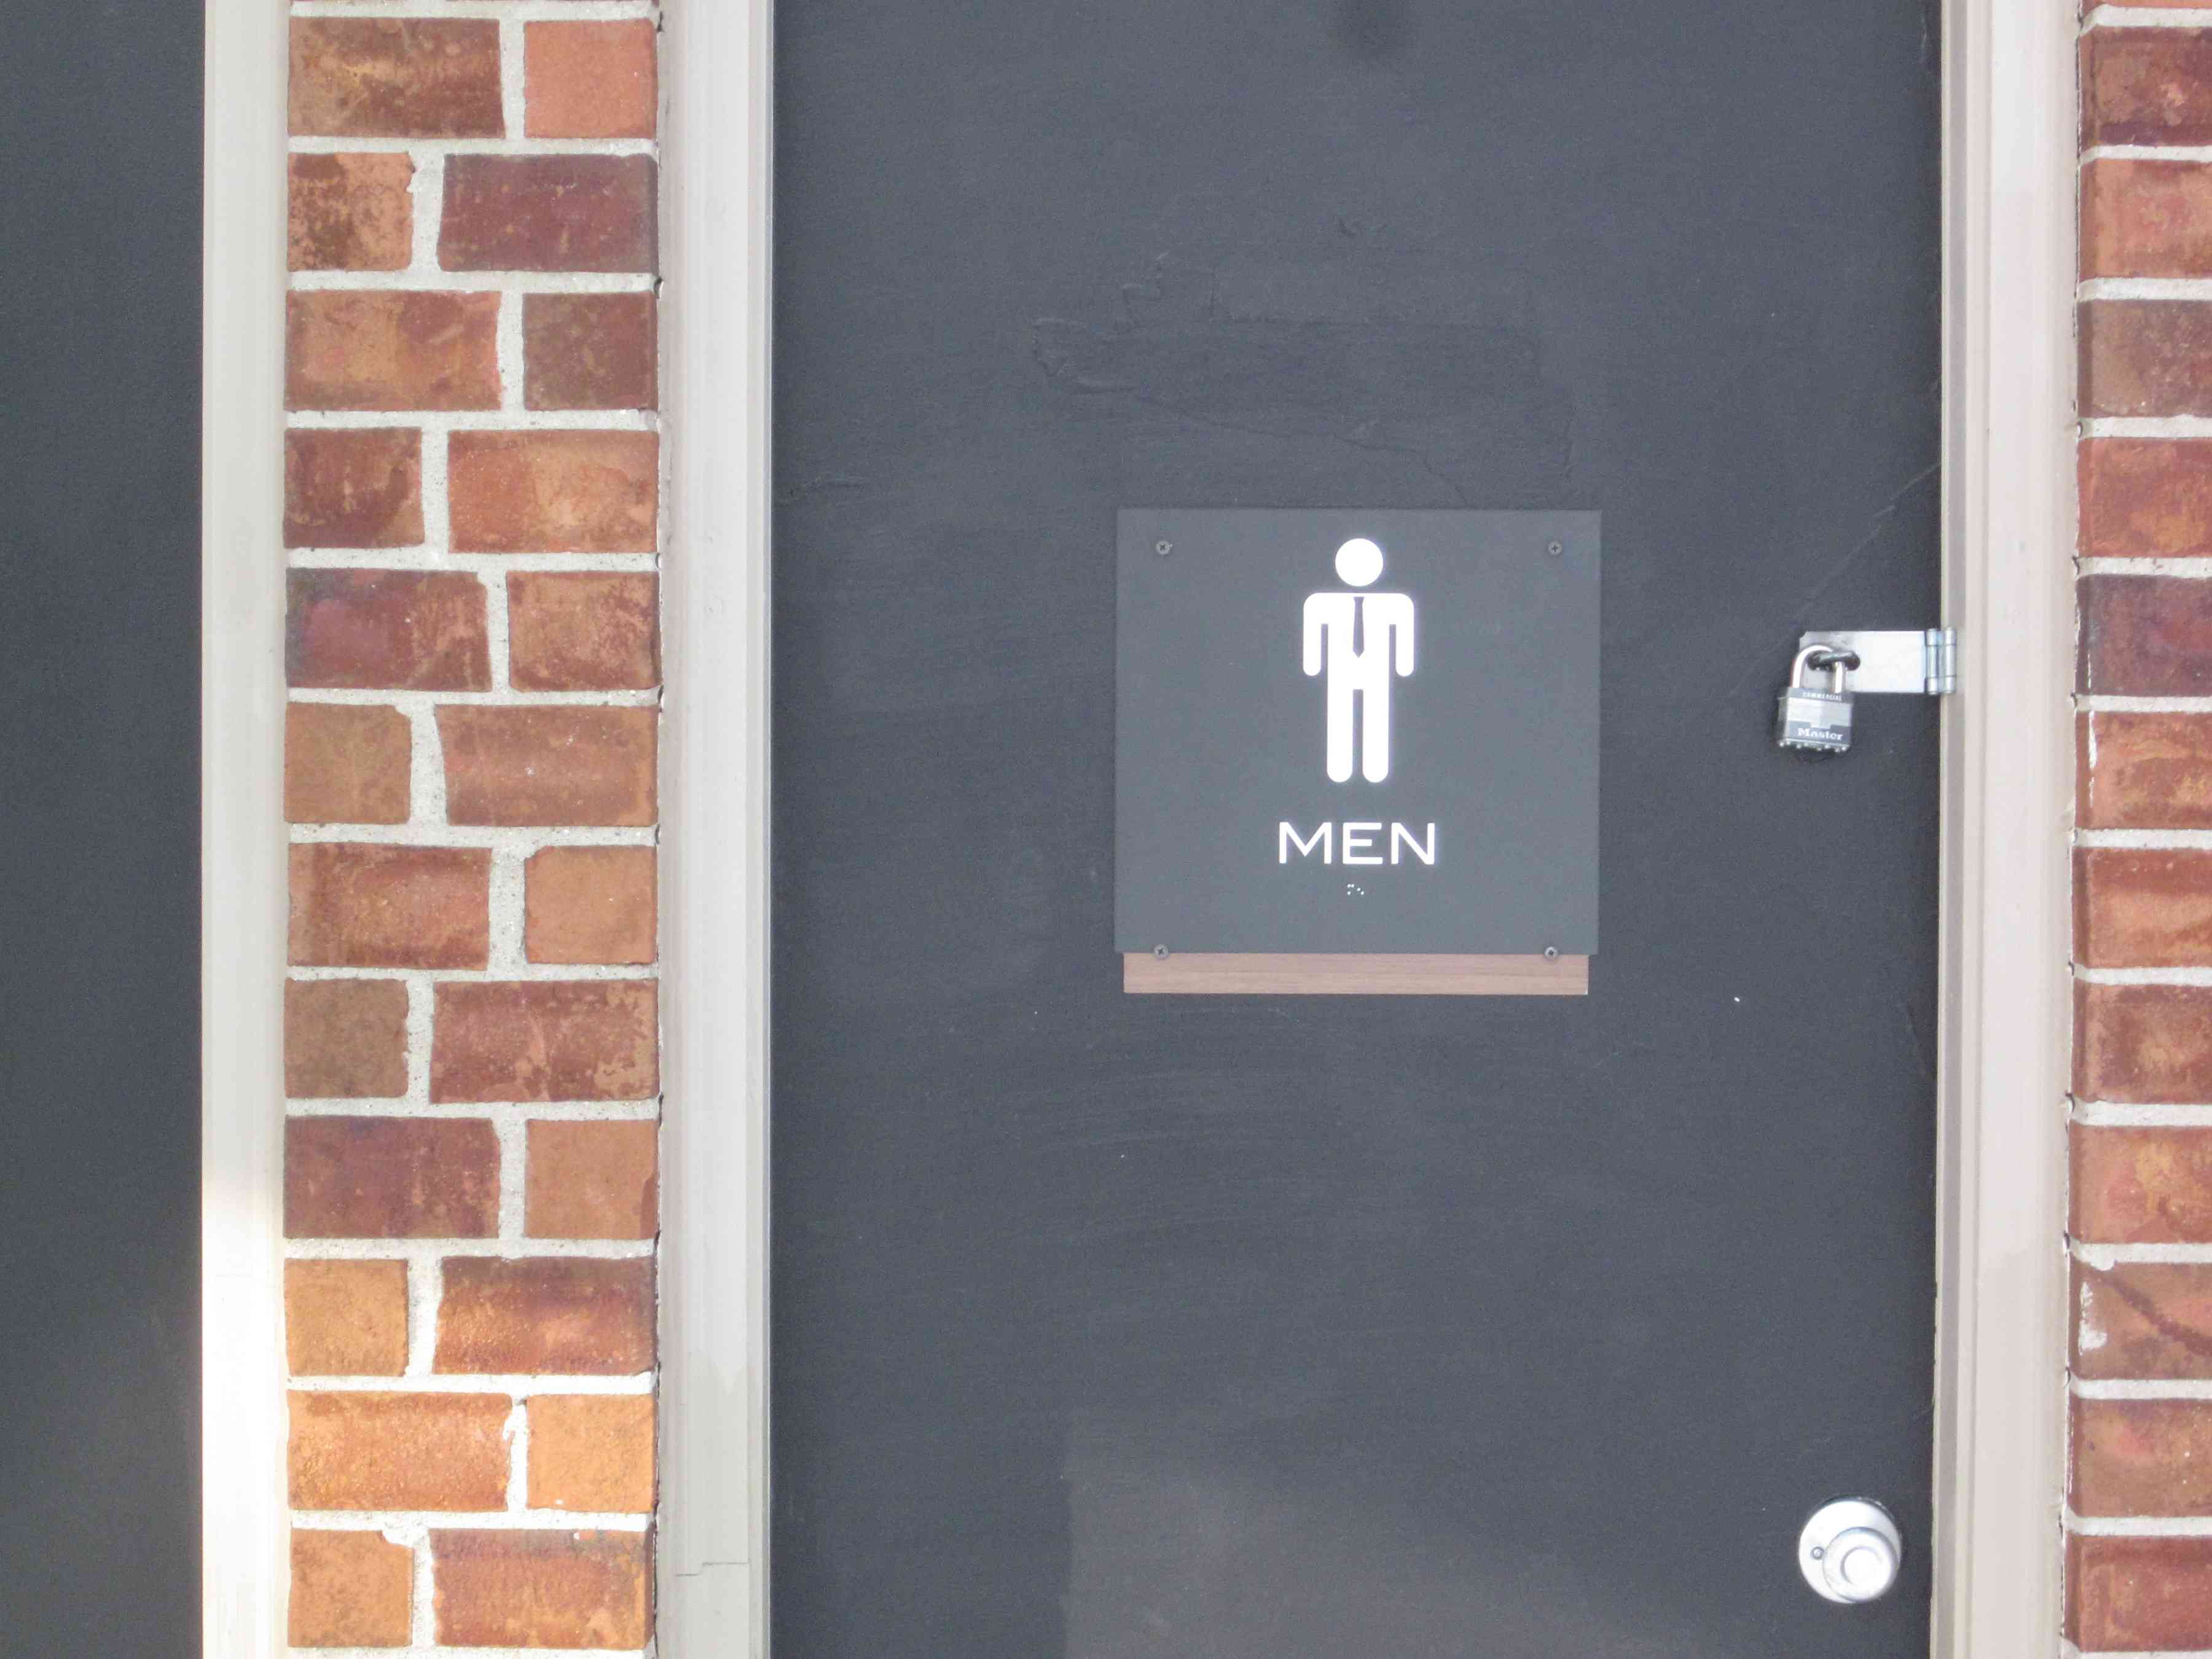 Pool  Custom Restroom Signs " MEN" with tie